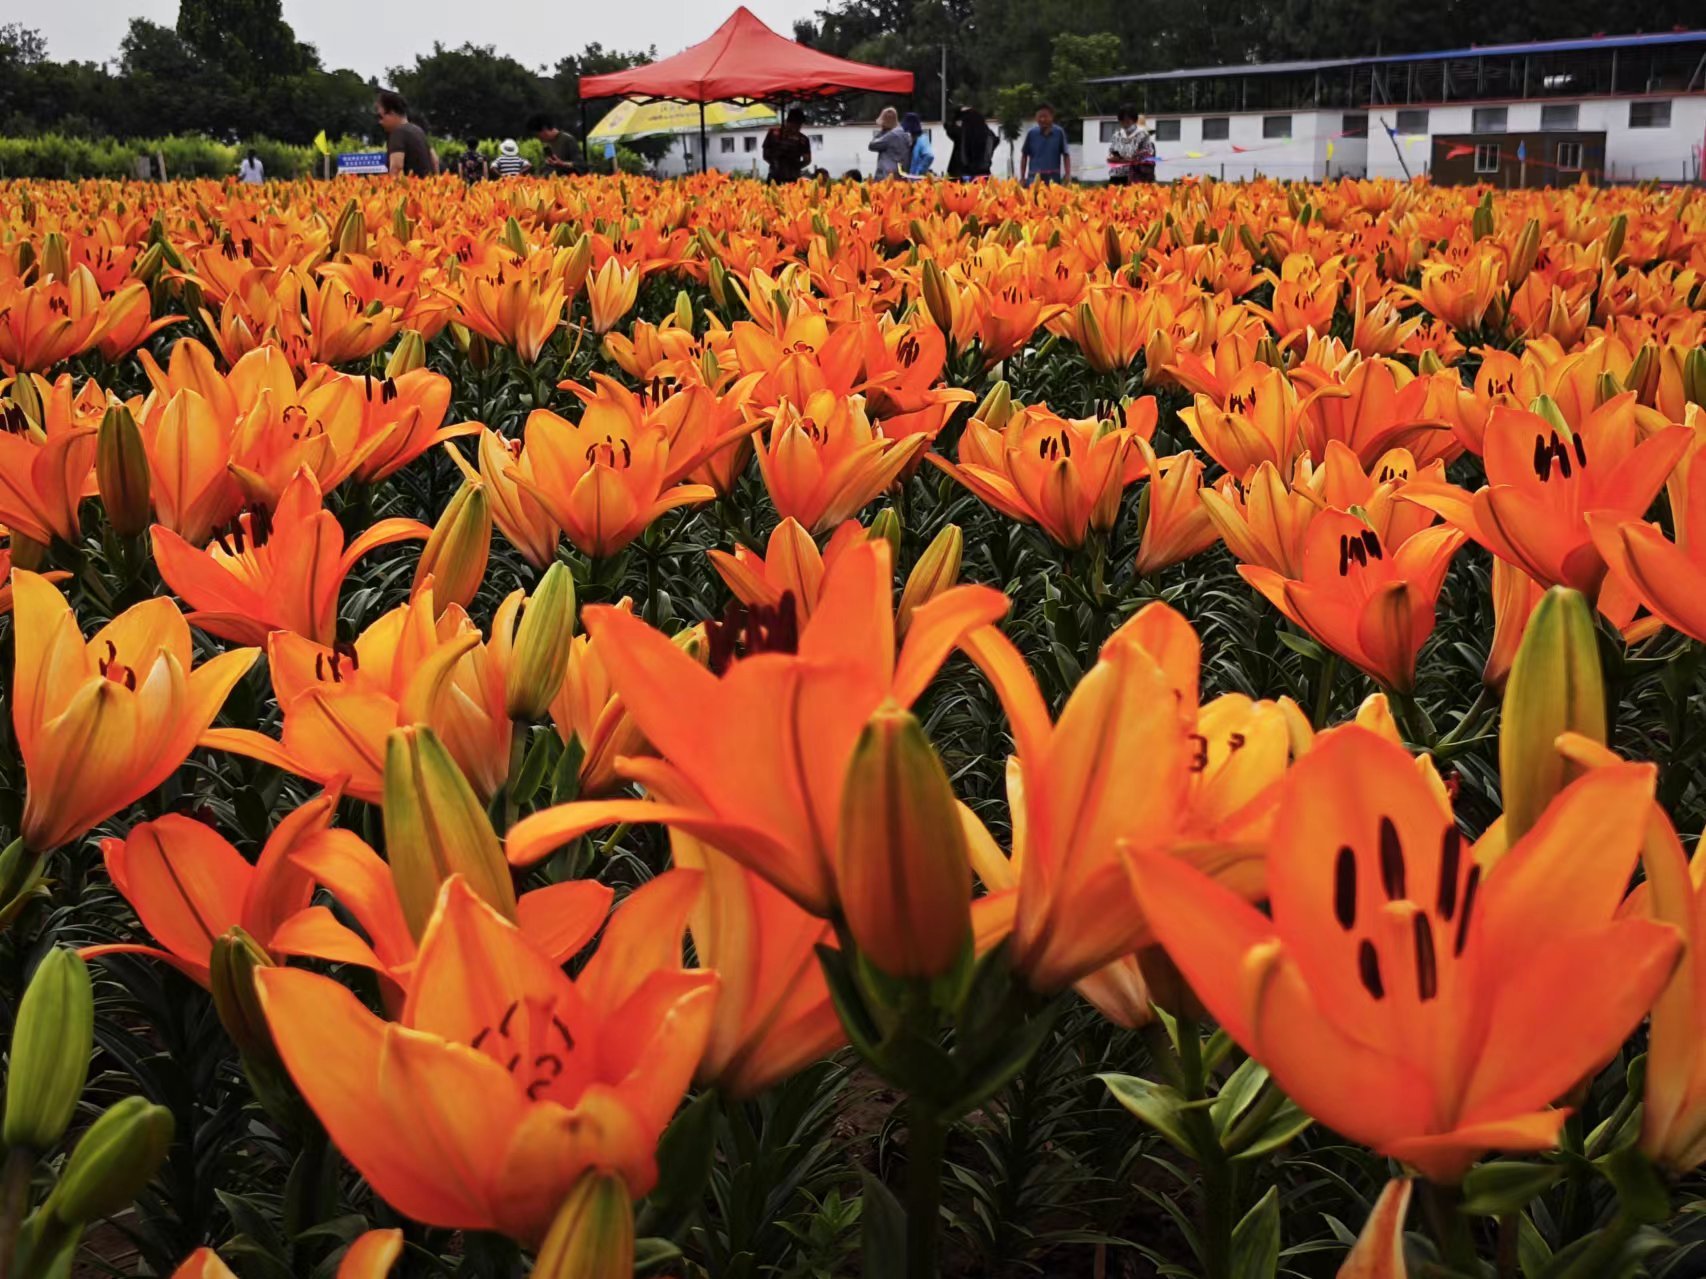 在位于牡丹区牡丹街道的菏泽市百合园内,五颜六色的百合花惊艳绽放